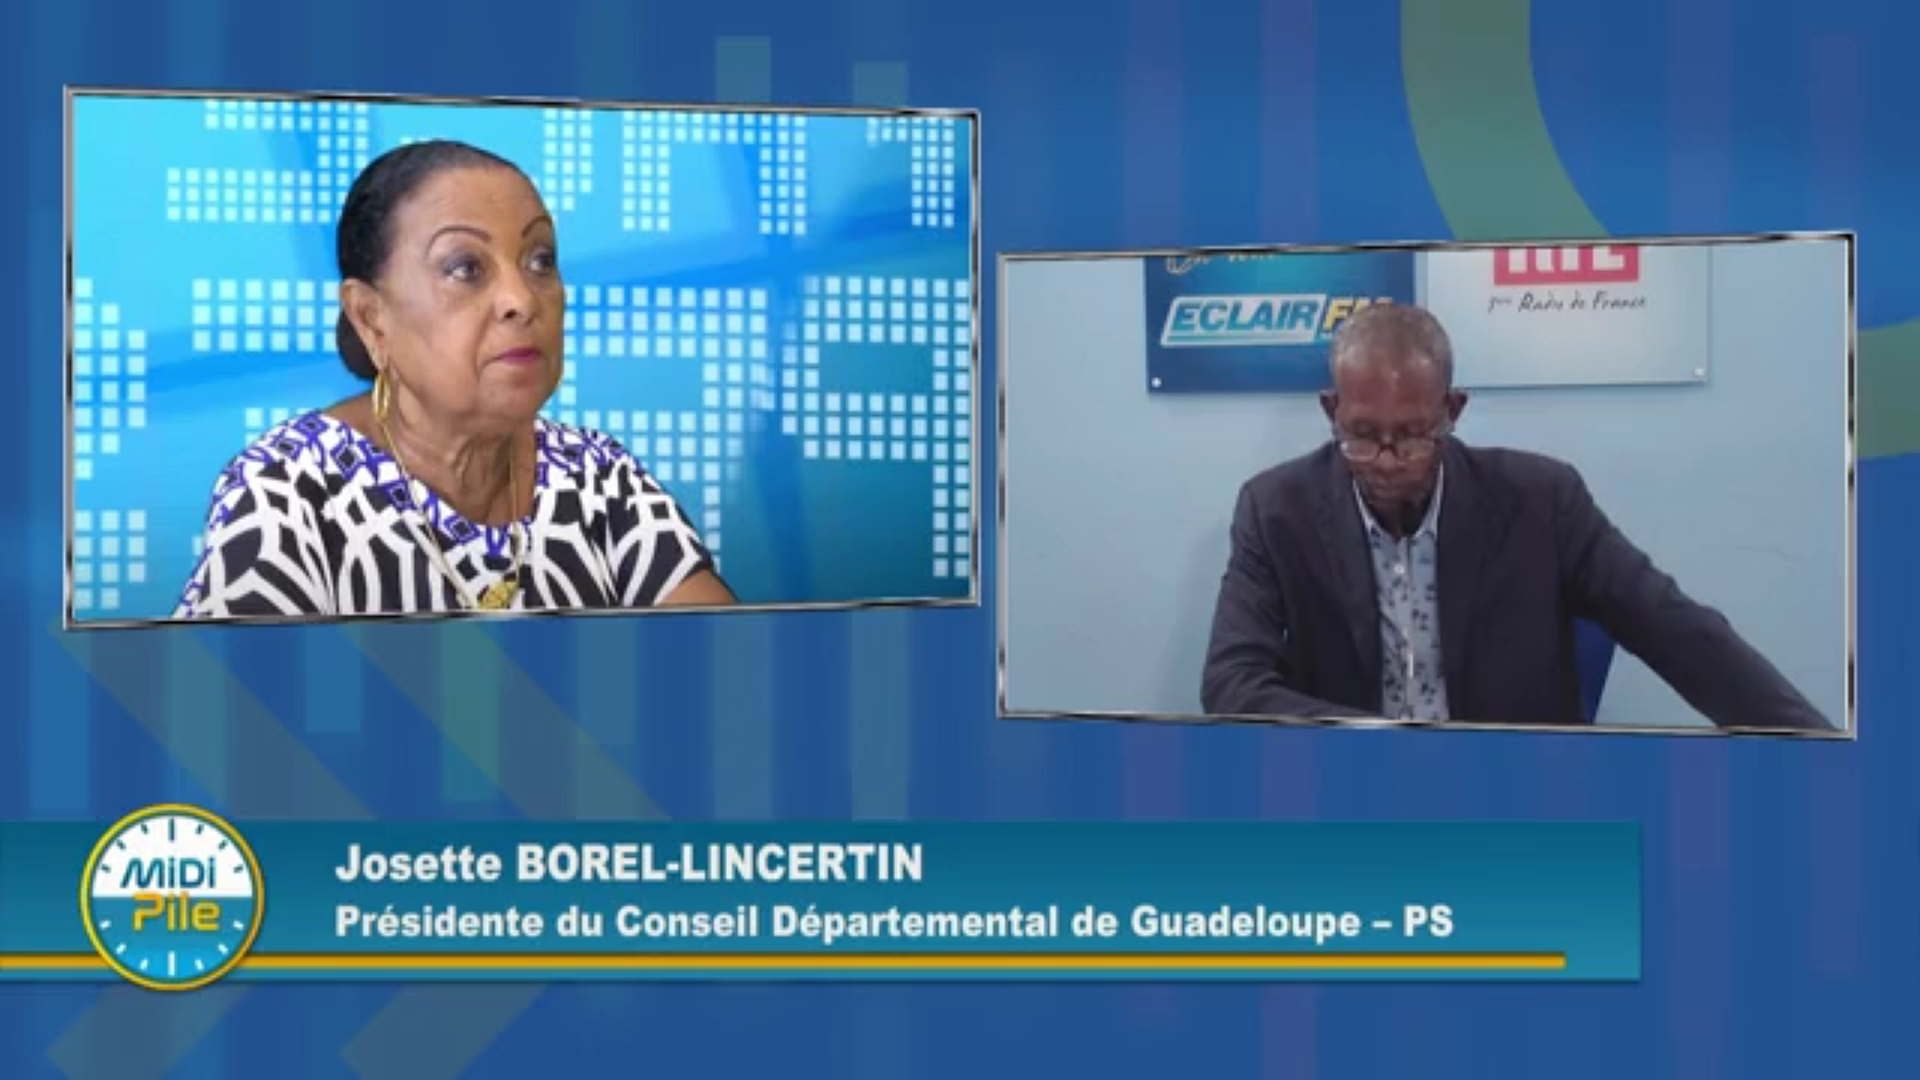 [Vidéo]Onews Guadeloupe. Après l’annonce de sa candidature josette BOREL LINCERTIN réagit sur Eclair Tv